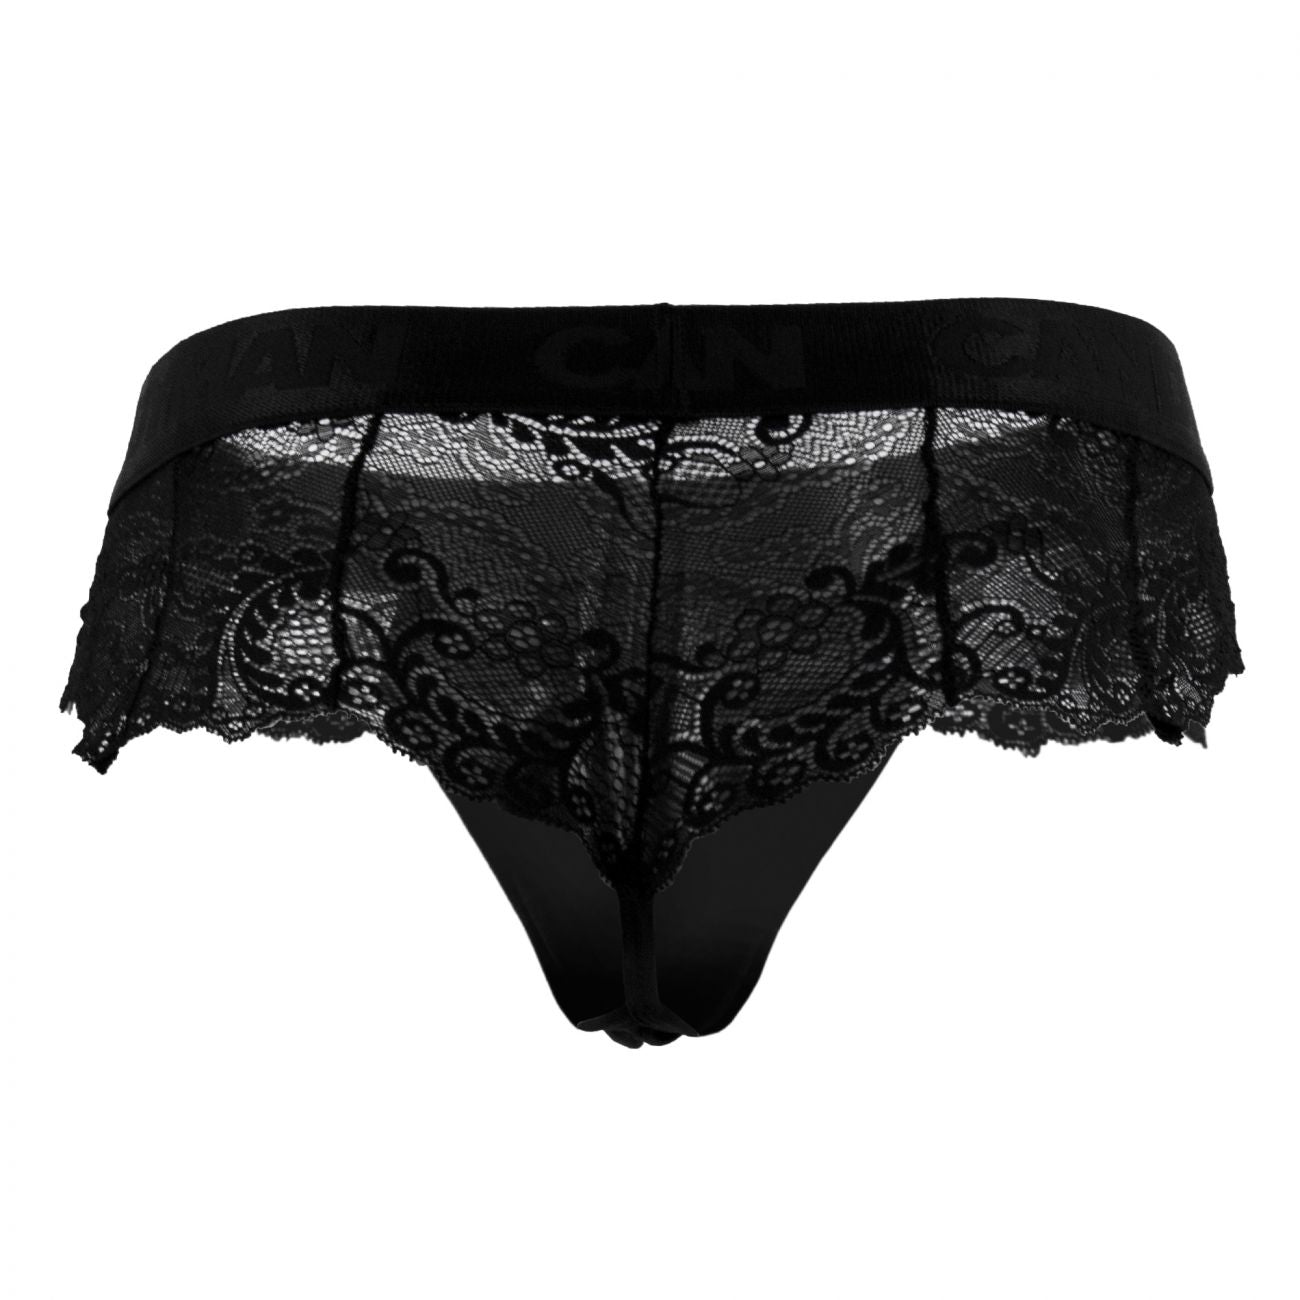 CandyMan 99304X Lace Thongs Black Plus Sizes